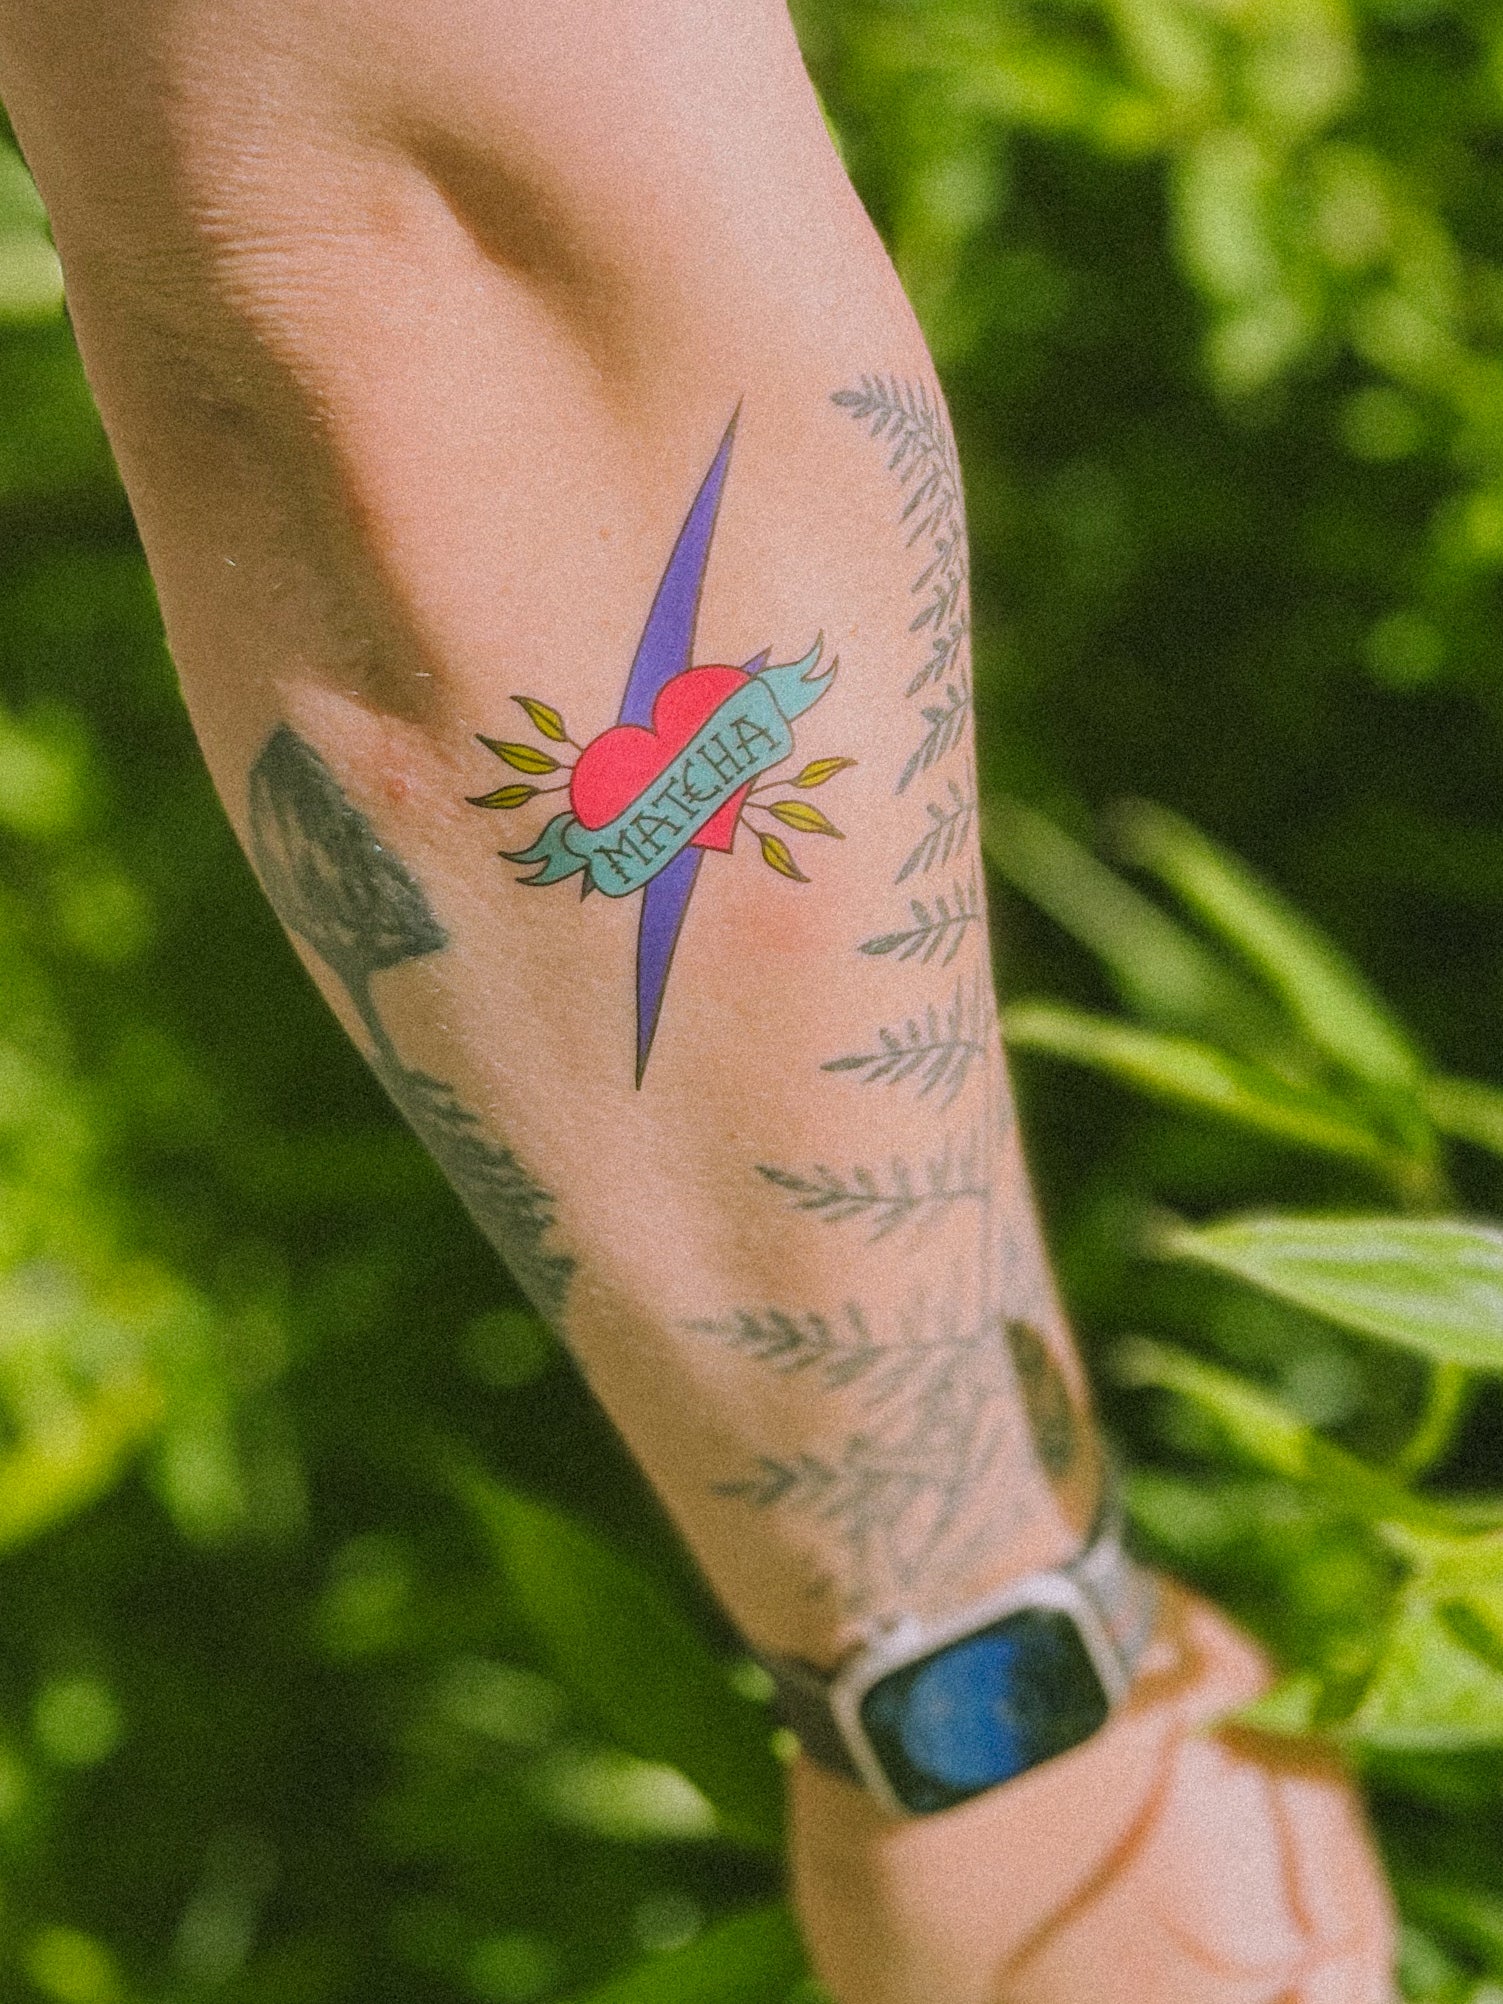 Matcha love tattoo on flex